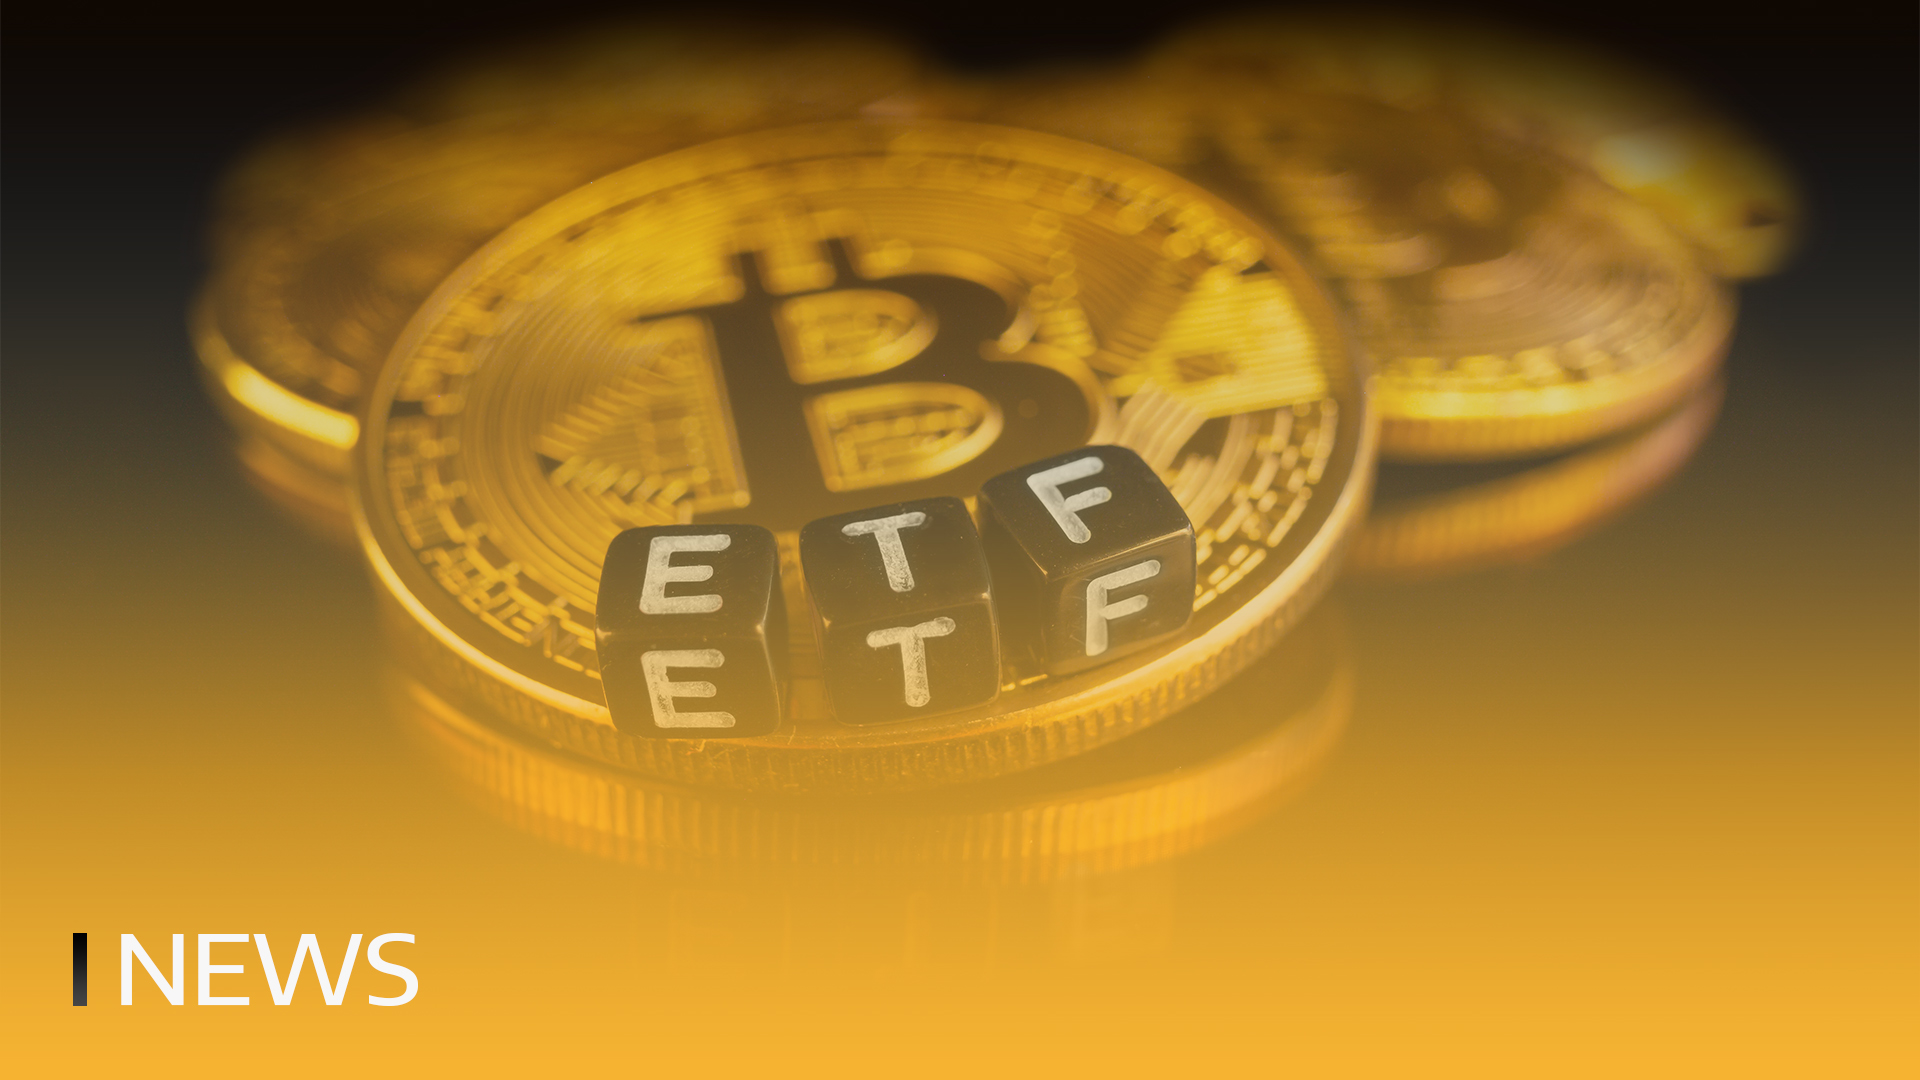 Bitcoin ETF kereskedési volumene megháromszorozódott, és elérte a 111 milliárd dollárt